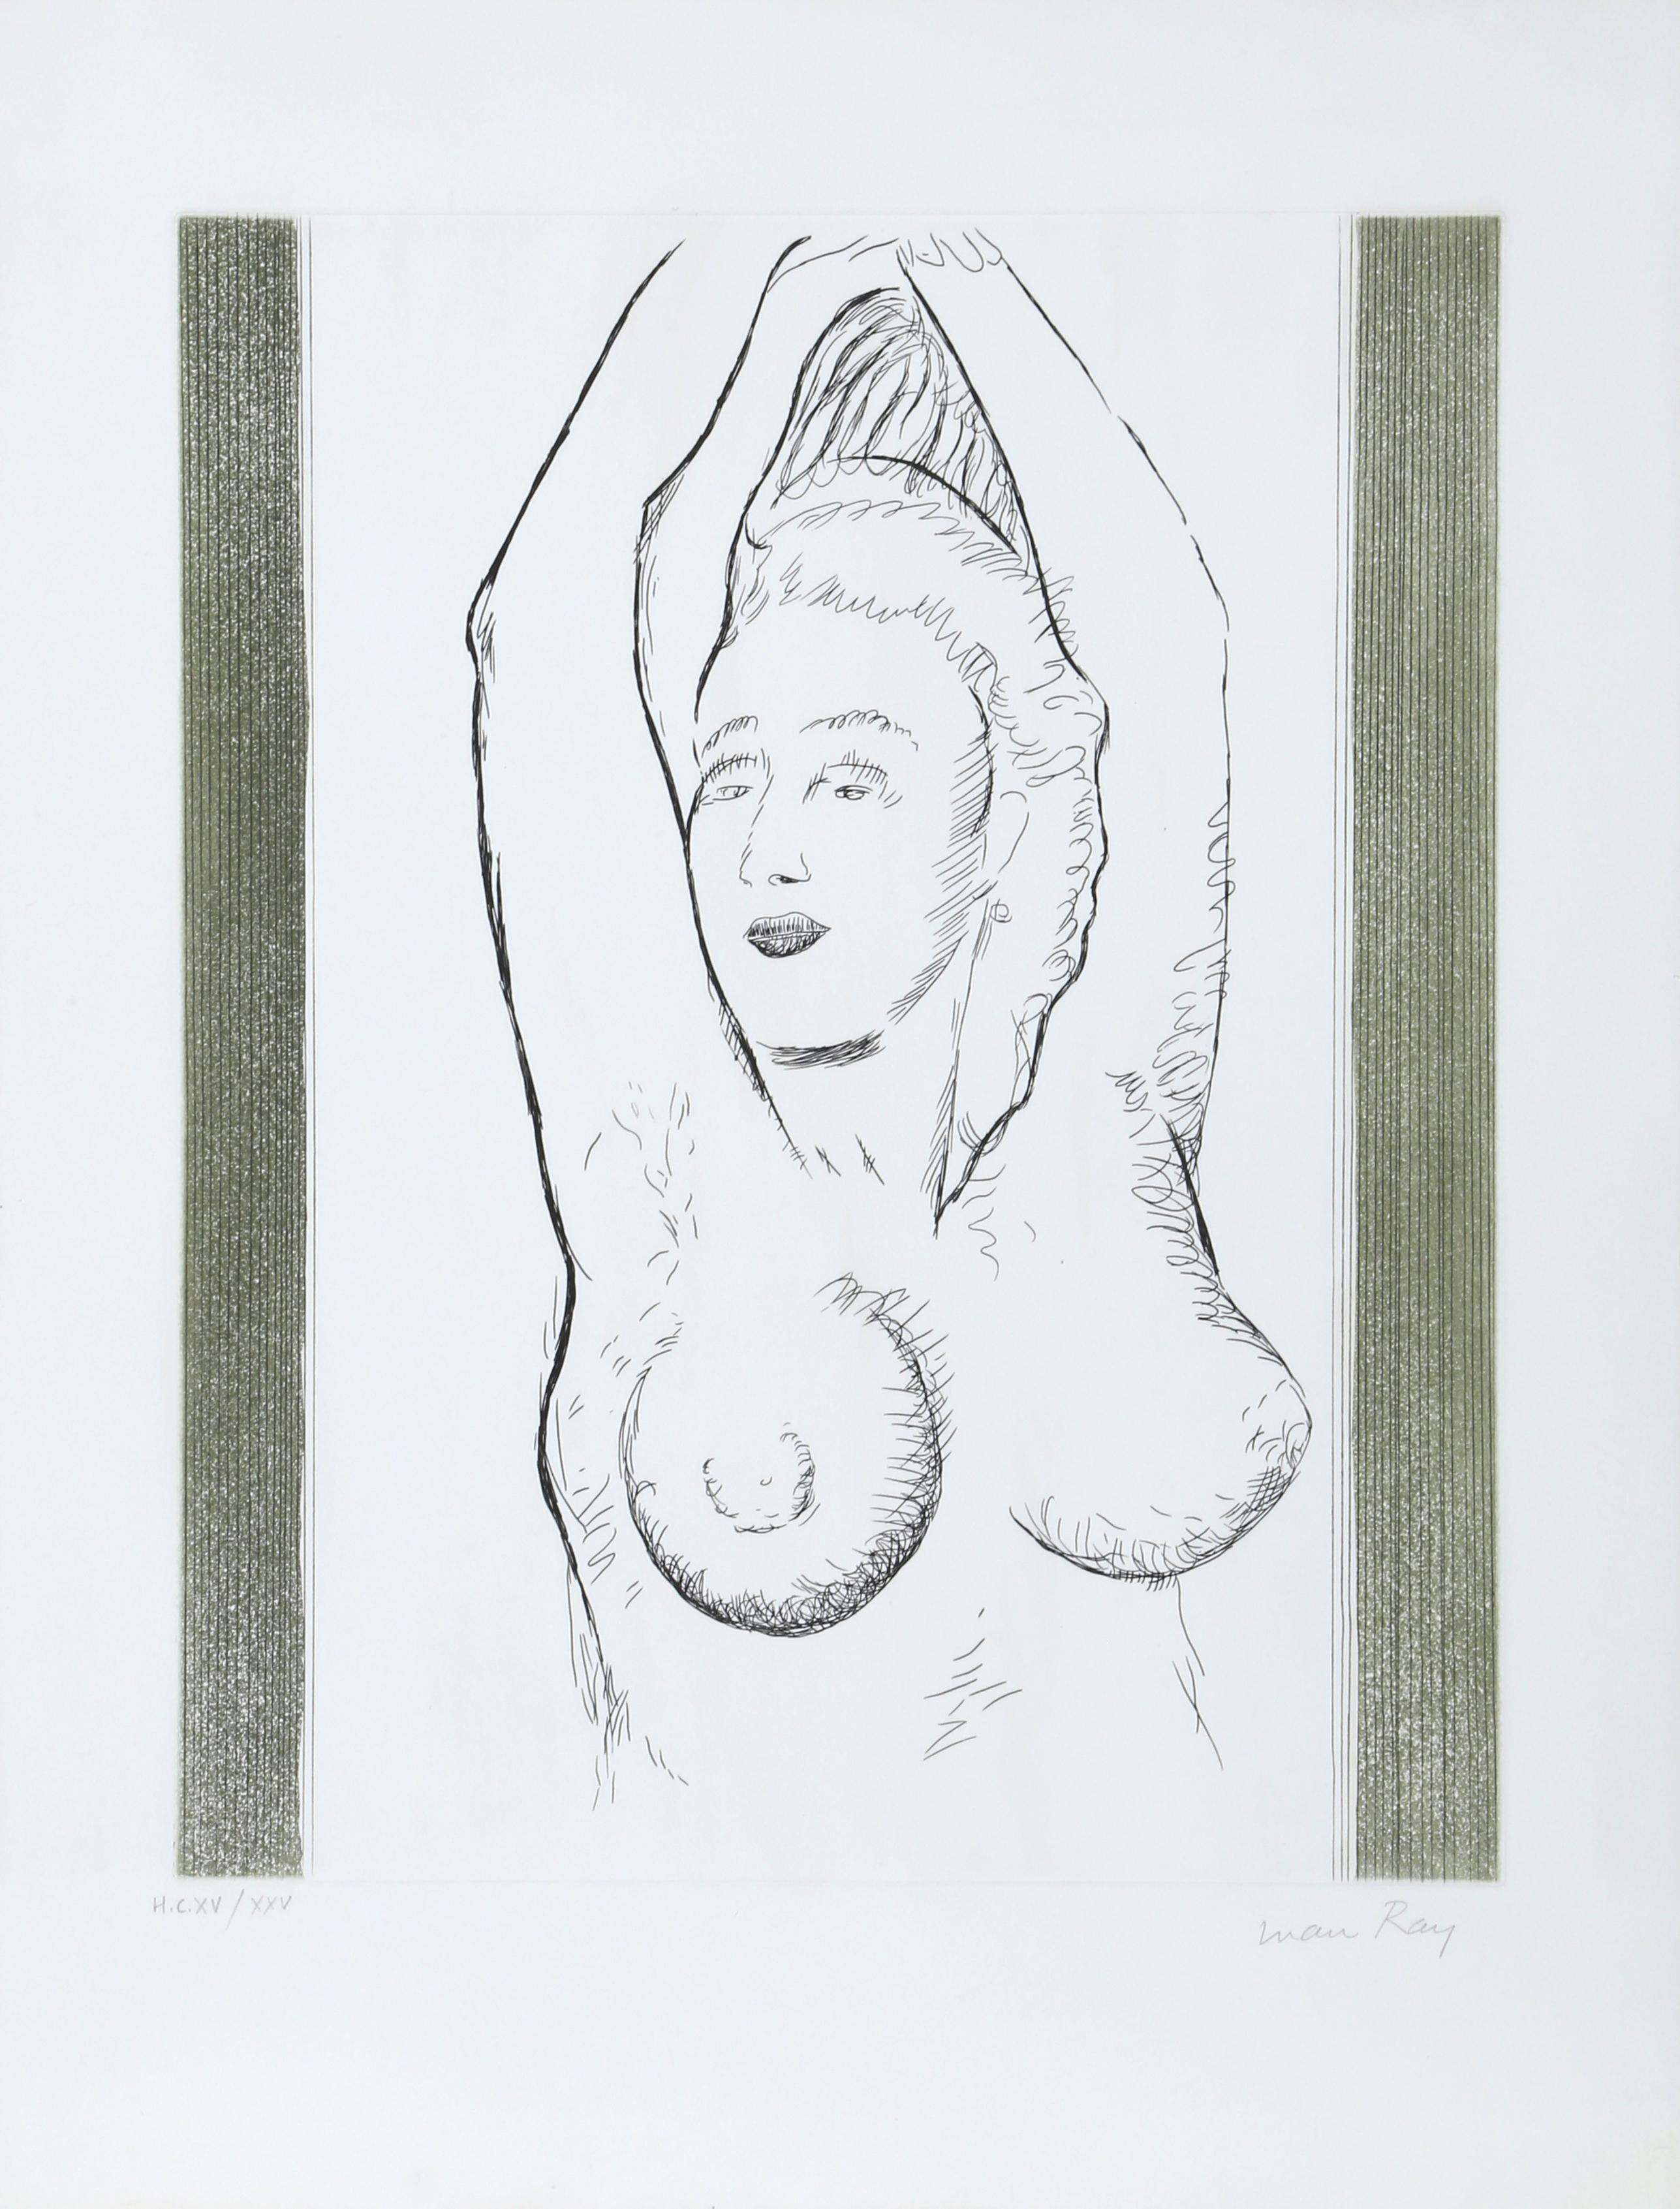 Künstler: Man Ray, Amerikaner (1890 - 1976)
Titel: Sonia aus La Ballade des Dames Hors du Temps
Jahr: 1970
Medium: Aquatinta-Radierung, mit Bleistift signiert und nummeriert
Auflage: 75; HC XV/XXV
Bildgröße: 19 x 16 Zoll
Größe: 26 x 19 Zoll (66,04 x